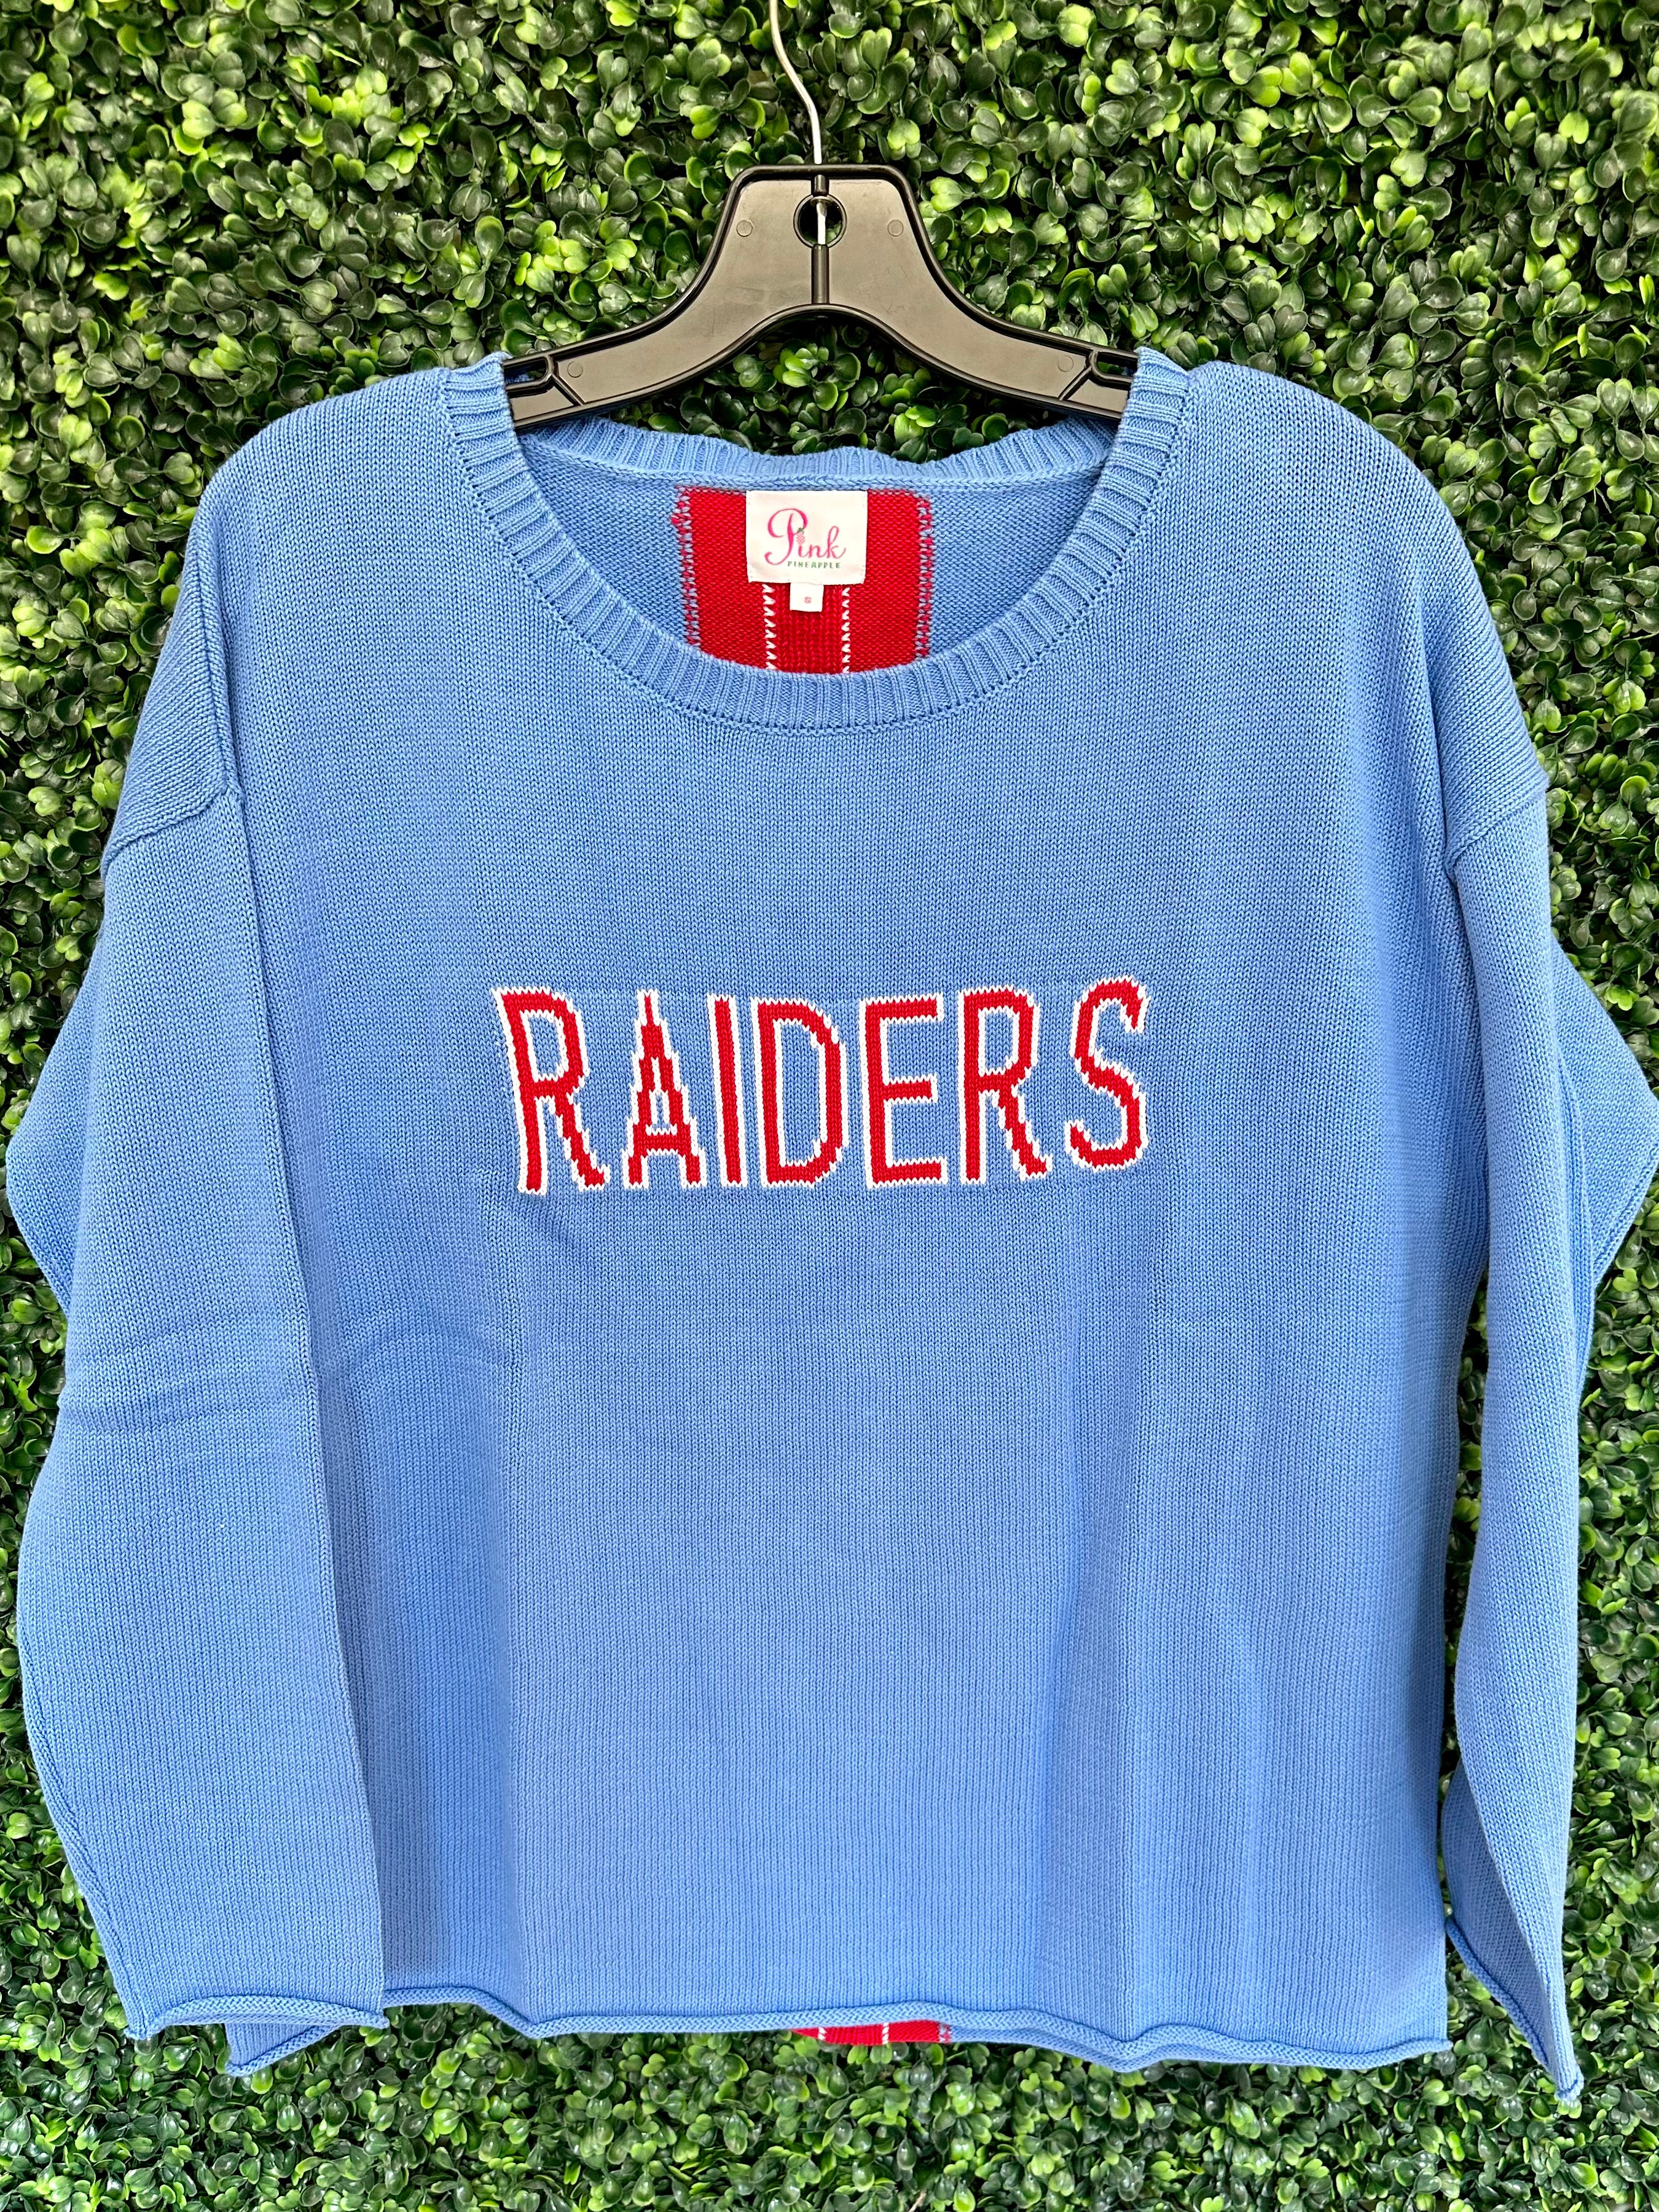 Raiders Custom Sweater